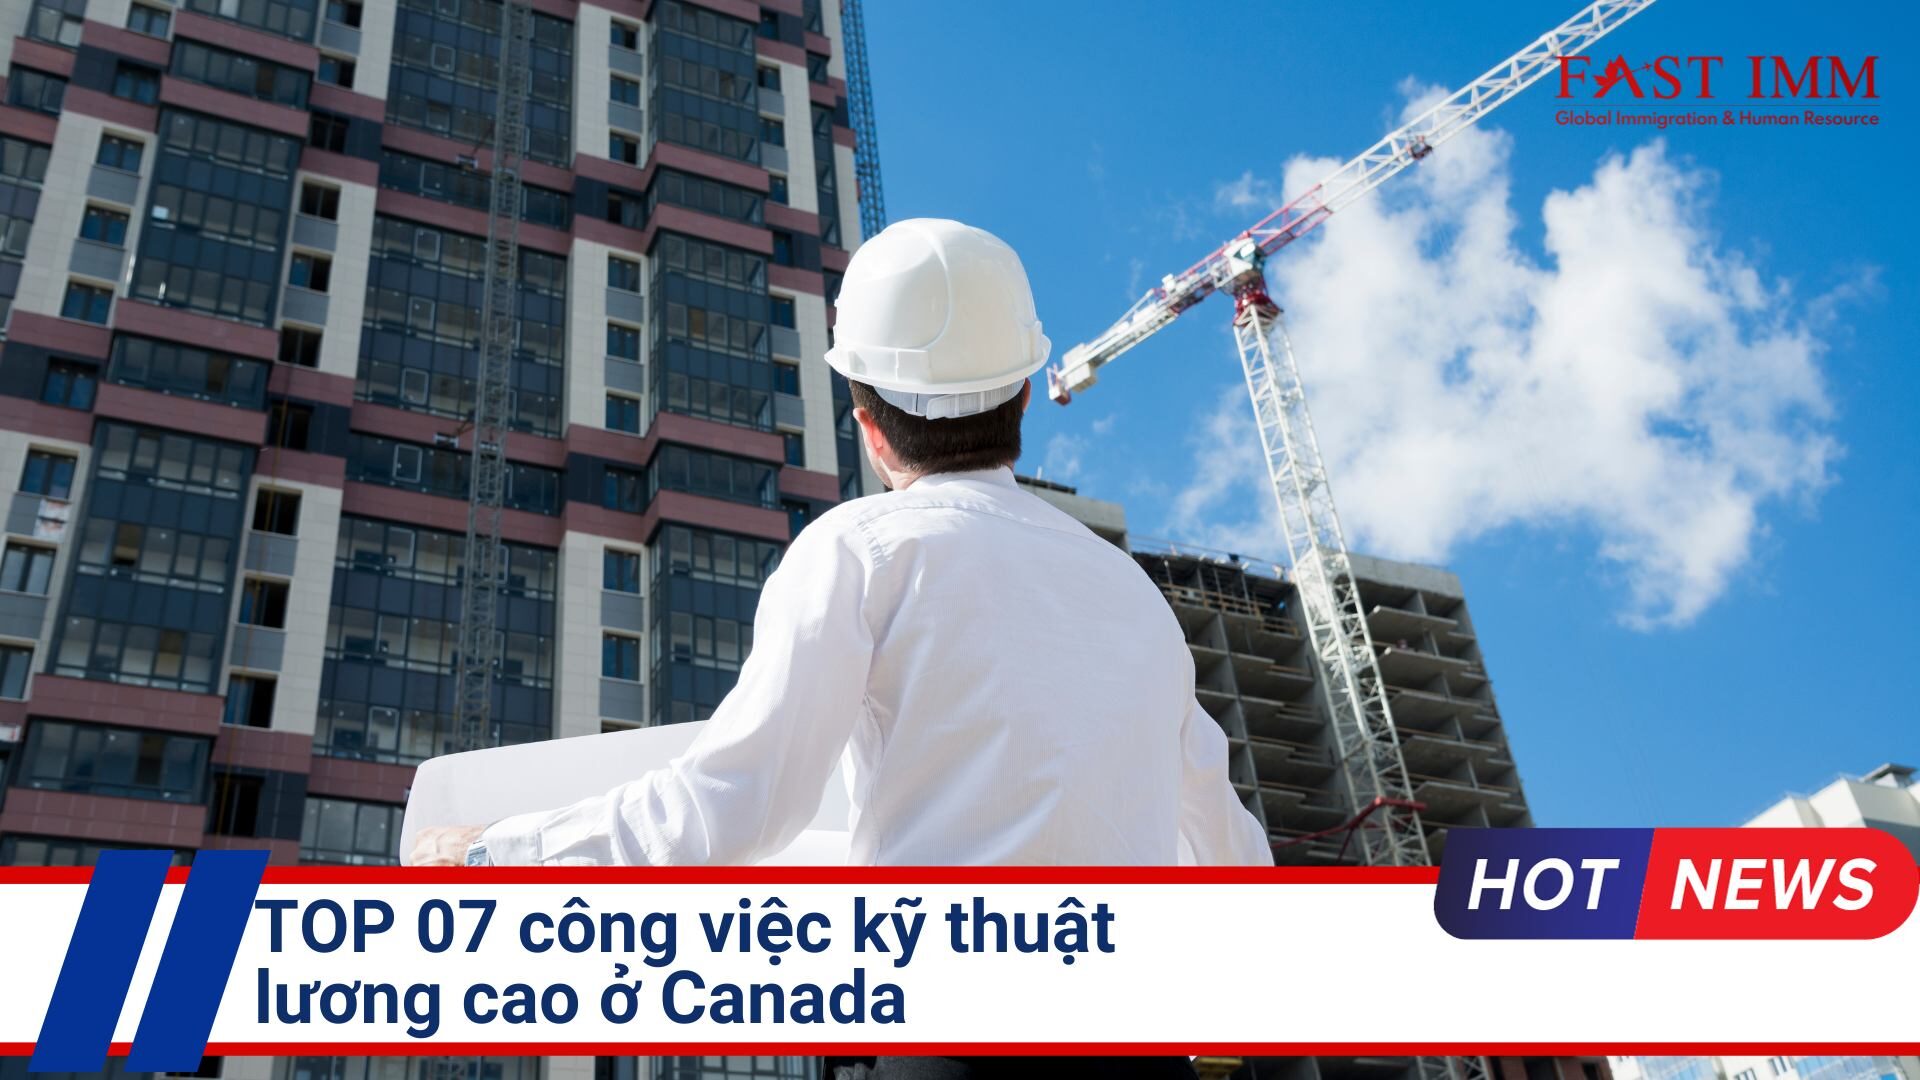 Top 7 công việc kỹ thuật lương cao tại Canada